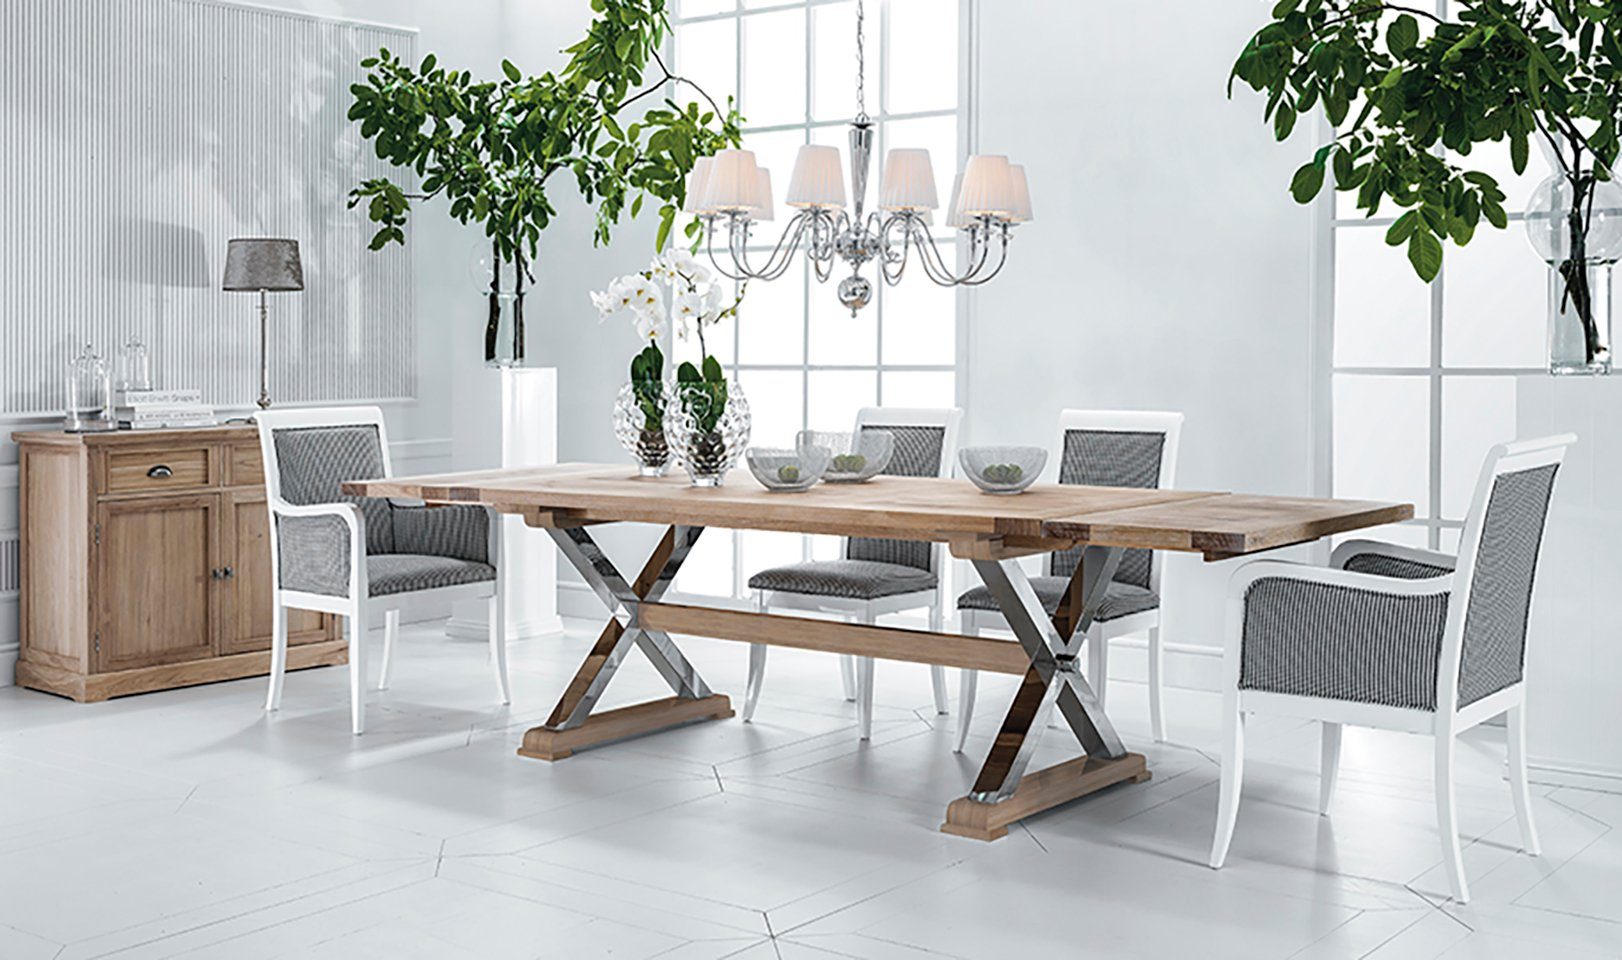 Jafra Esstisch, design klassischer tisch ausziehbarer tische neu holz esstisch wohnzimmer luxus